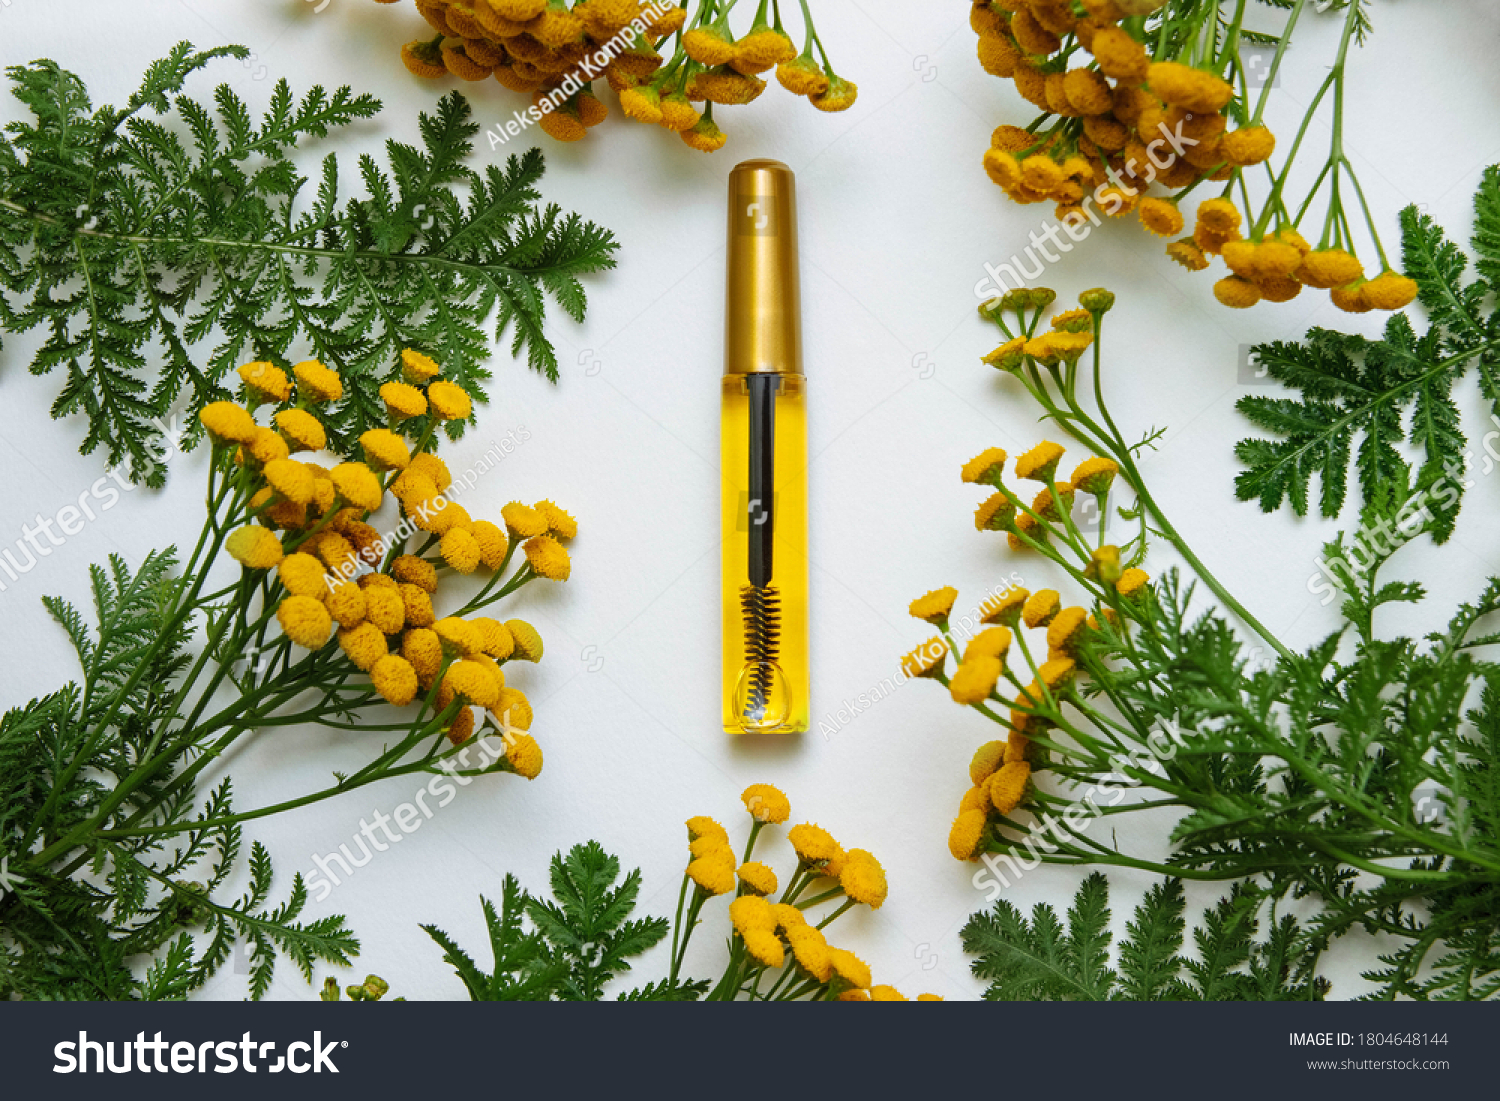 白い背景に黄色のタンジー花 カモミールと緑の葉 美容コンセプト まつげと眉のケア および白い背景にブラシとプラスチックの透明なボトルのまつげとまゆ油写真素材 Shutterstock